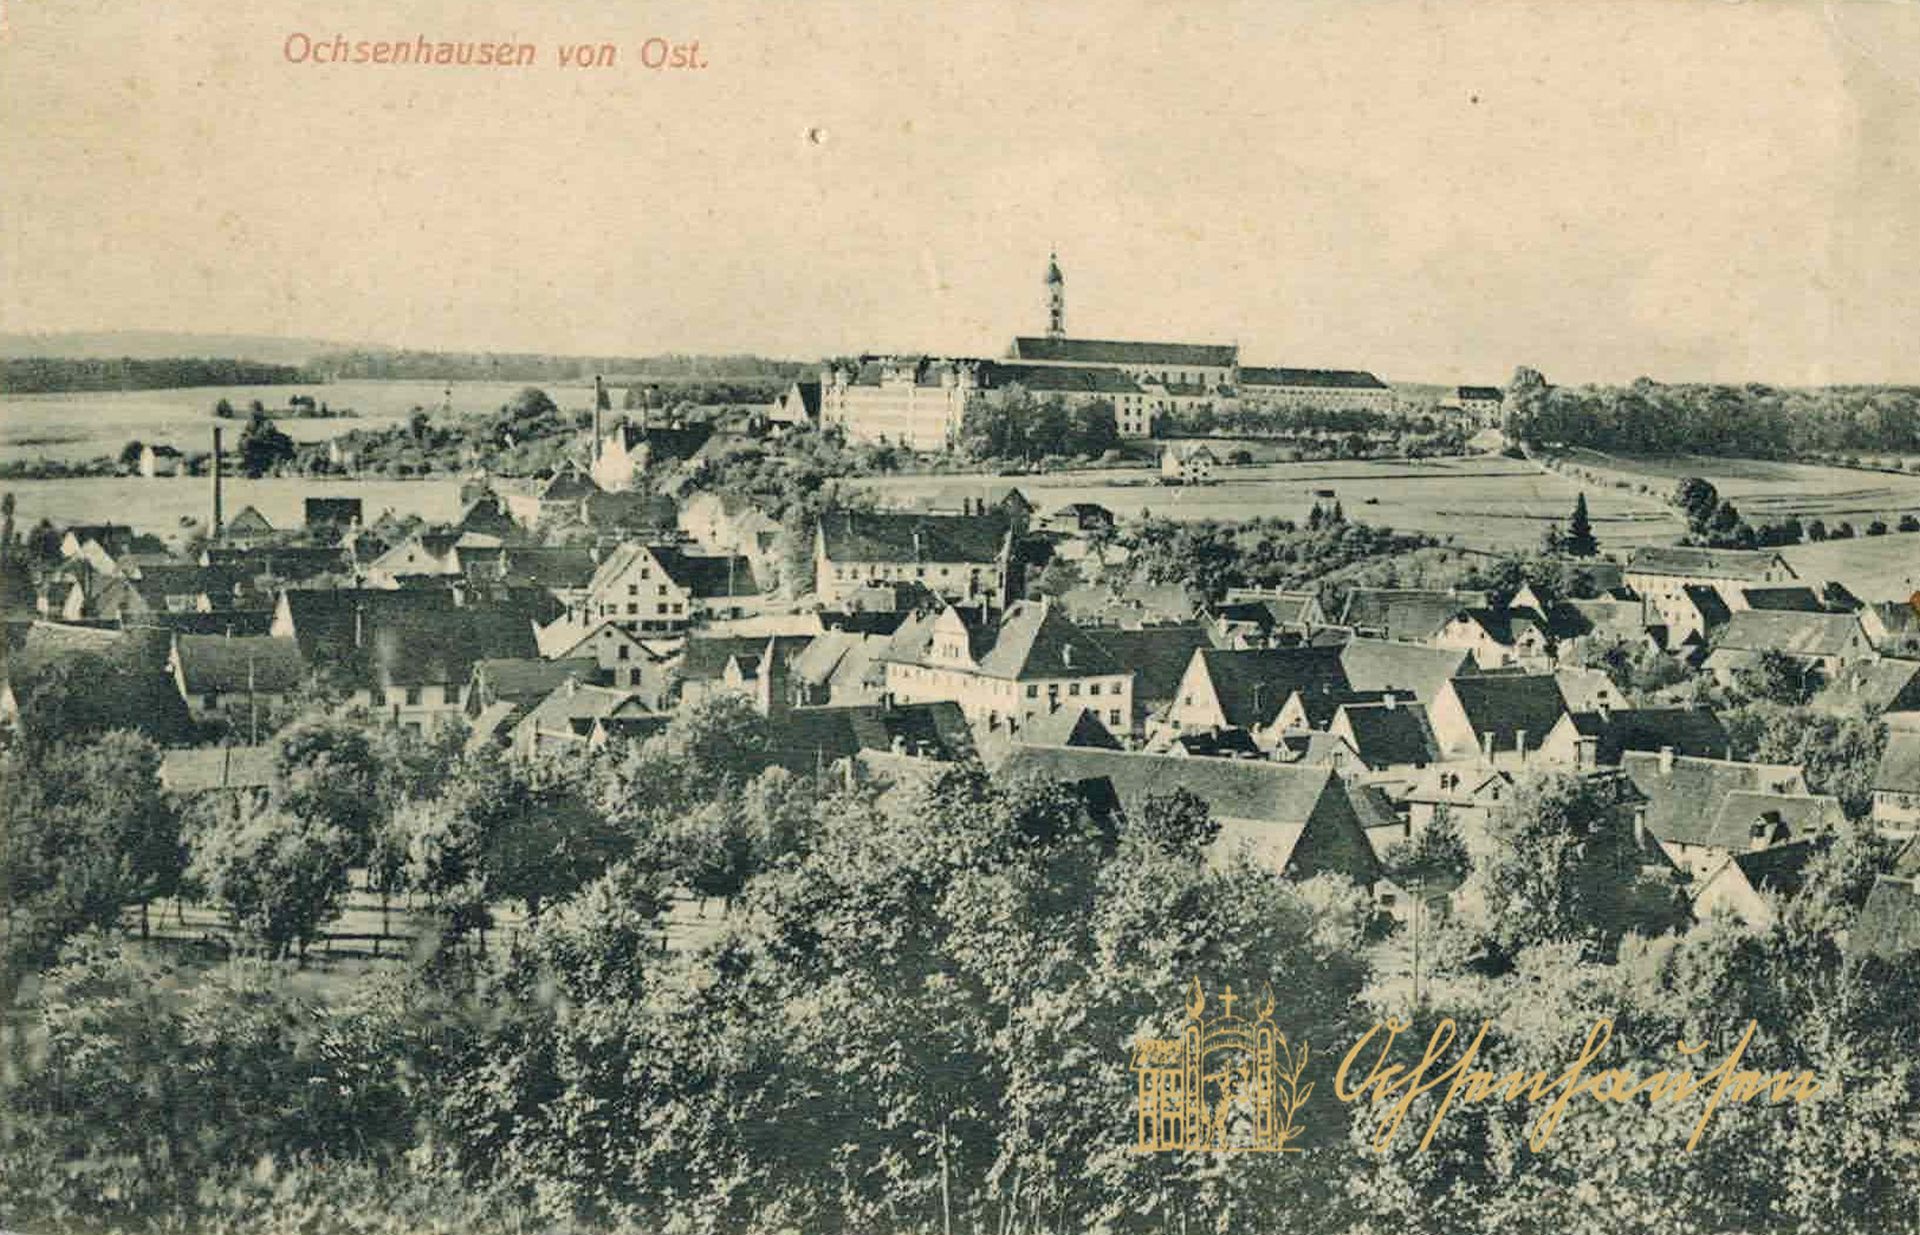 Ochsenhausen von Ost.